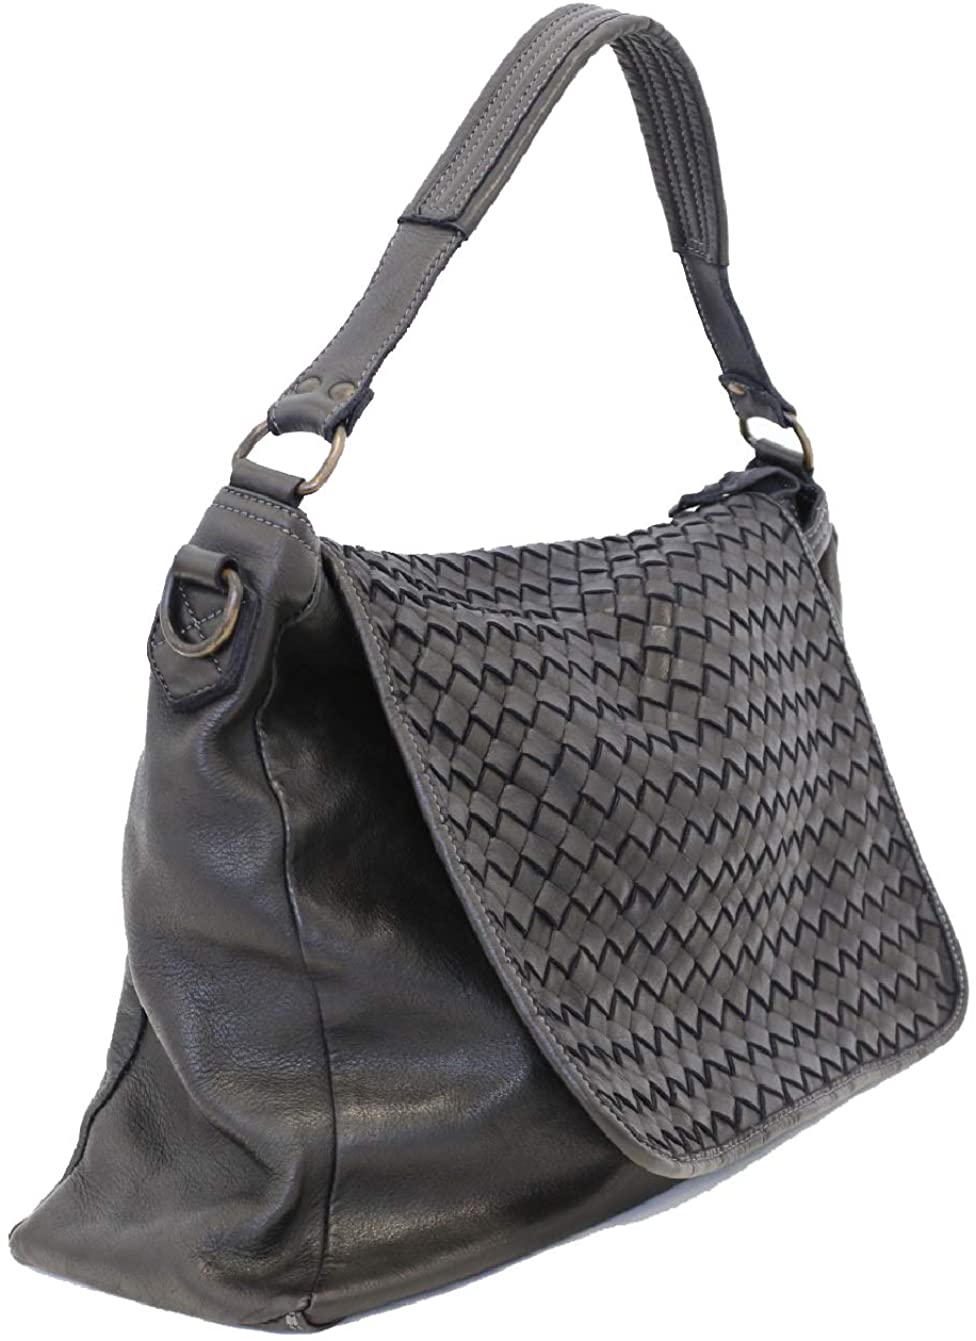 Bozana Bag Rimini schwarz Italy Designer Damen Handtasche Schultertasche Tasche Calf Leather Shopper Neu